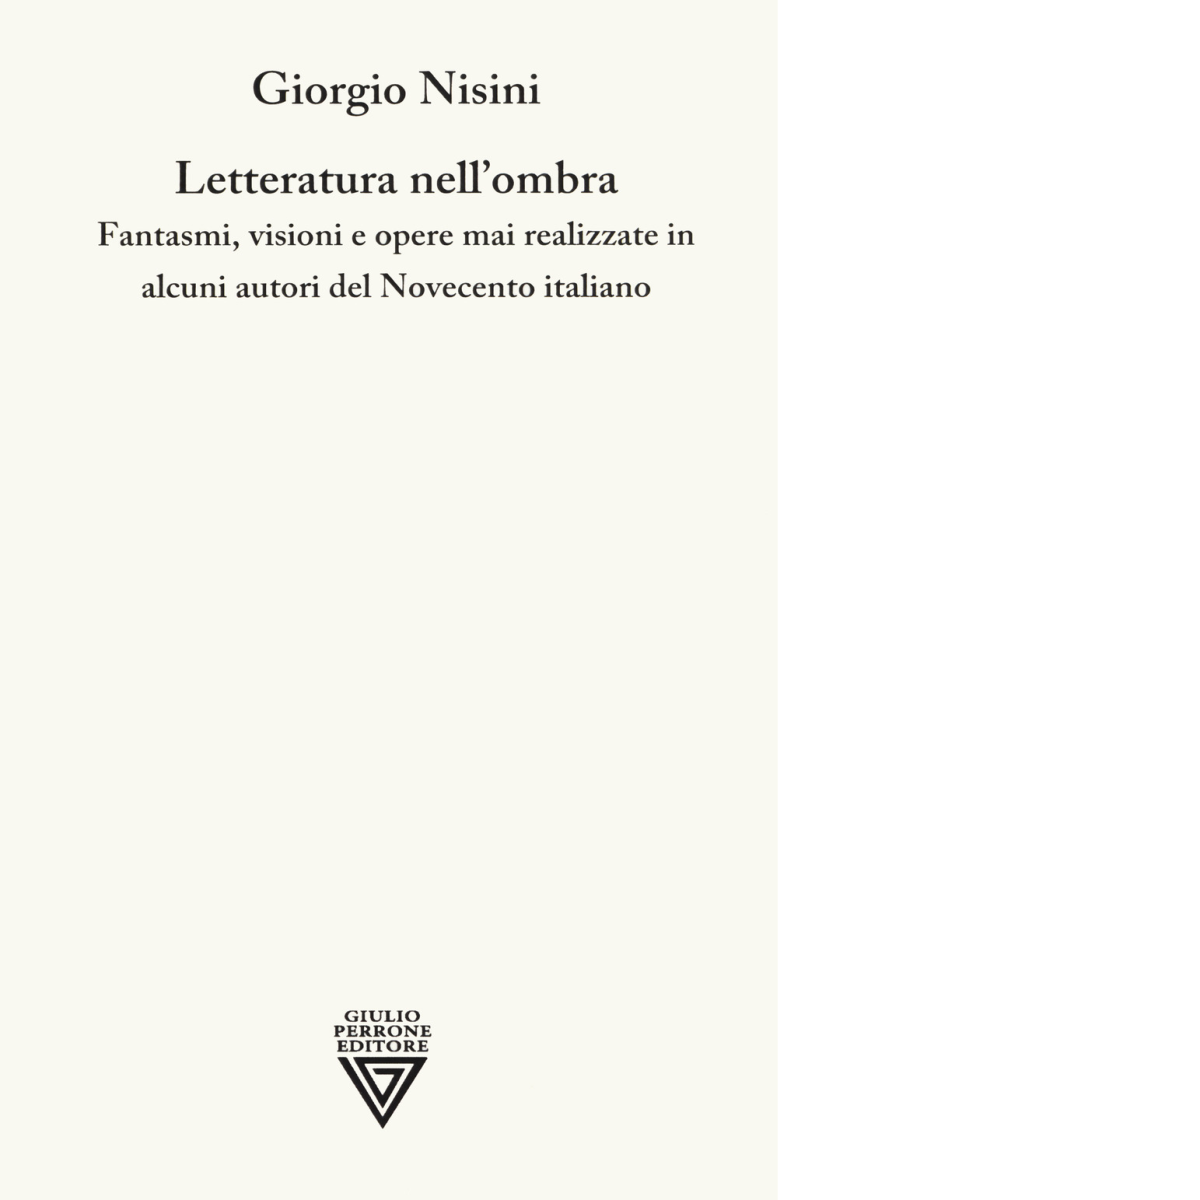 Letteratura nell'ombra - Giorgio Nisini - Perrone editore, 2019 libro usato